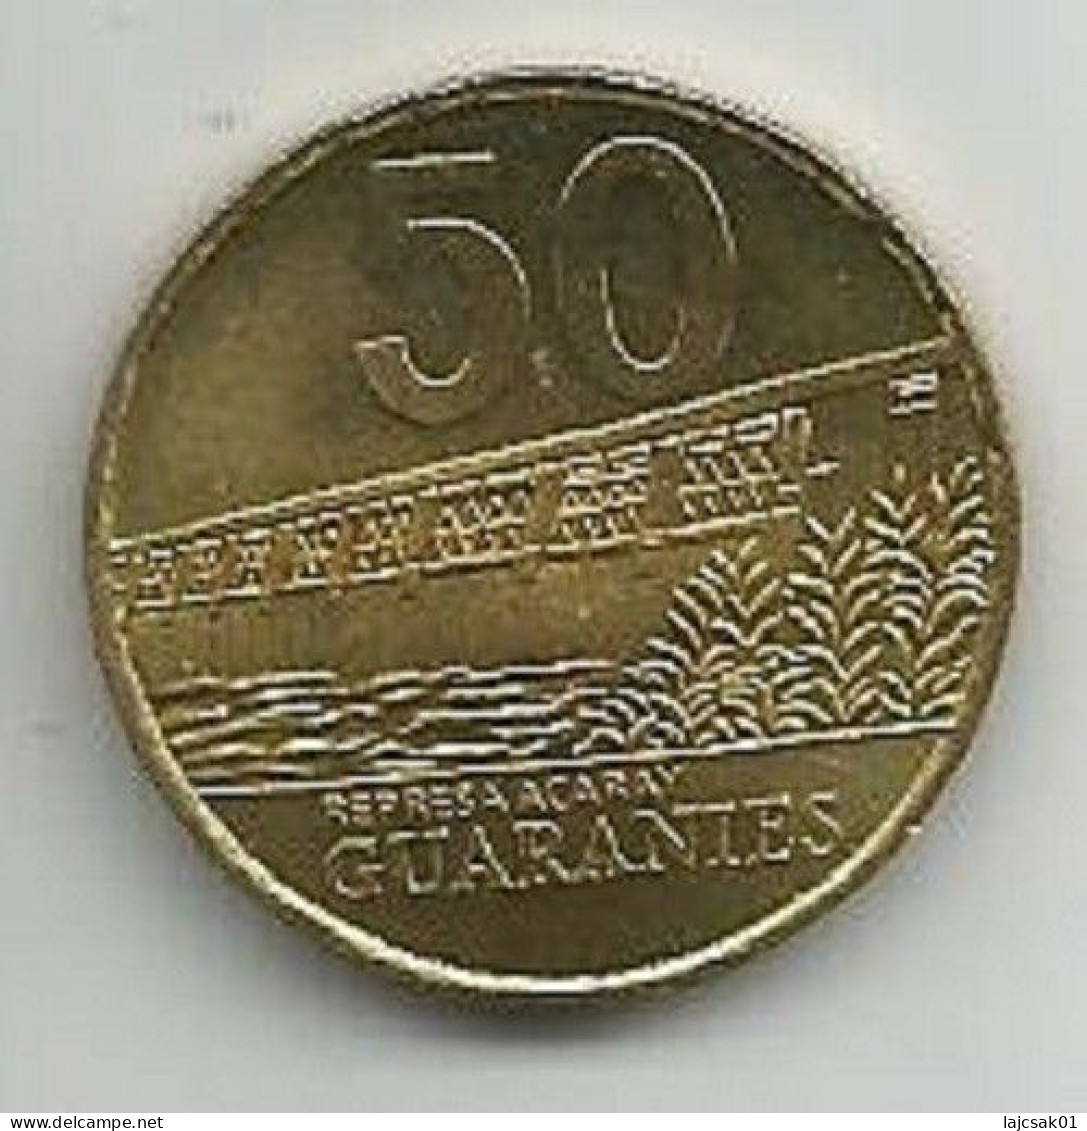 Paraguay 50 Guaranies 1998. High Grade - Paraguay